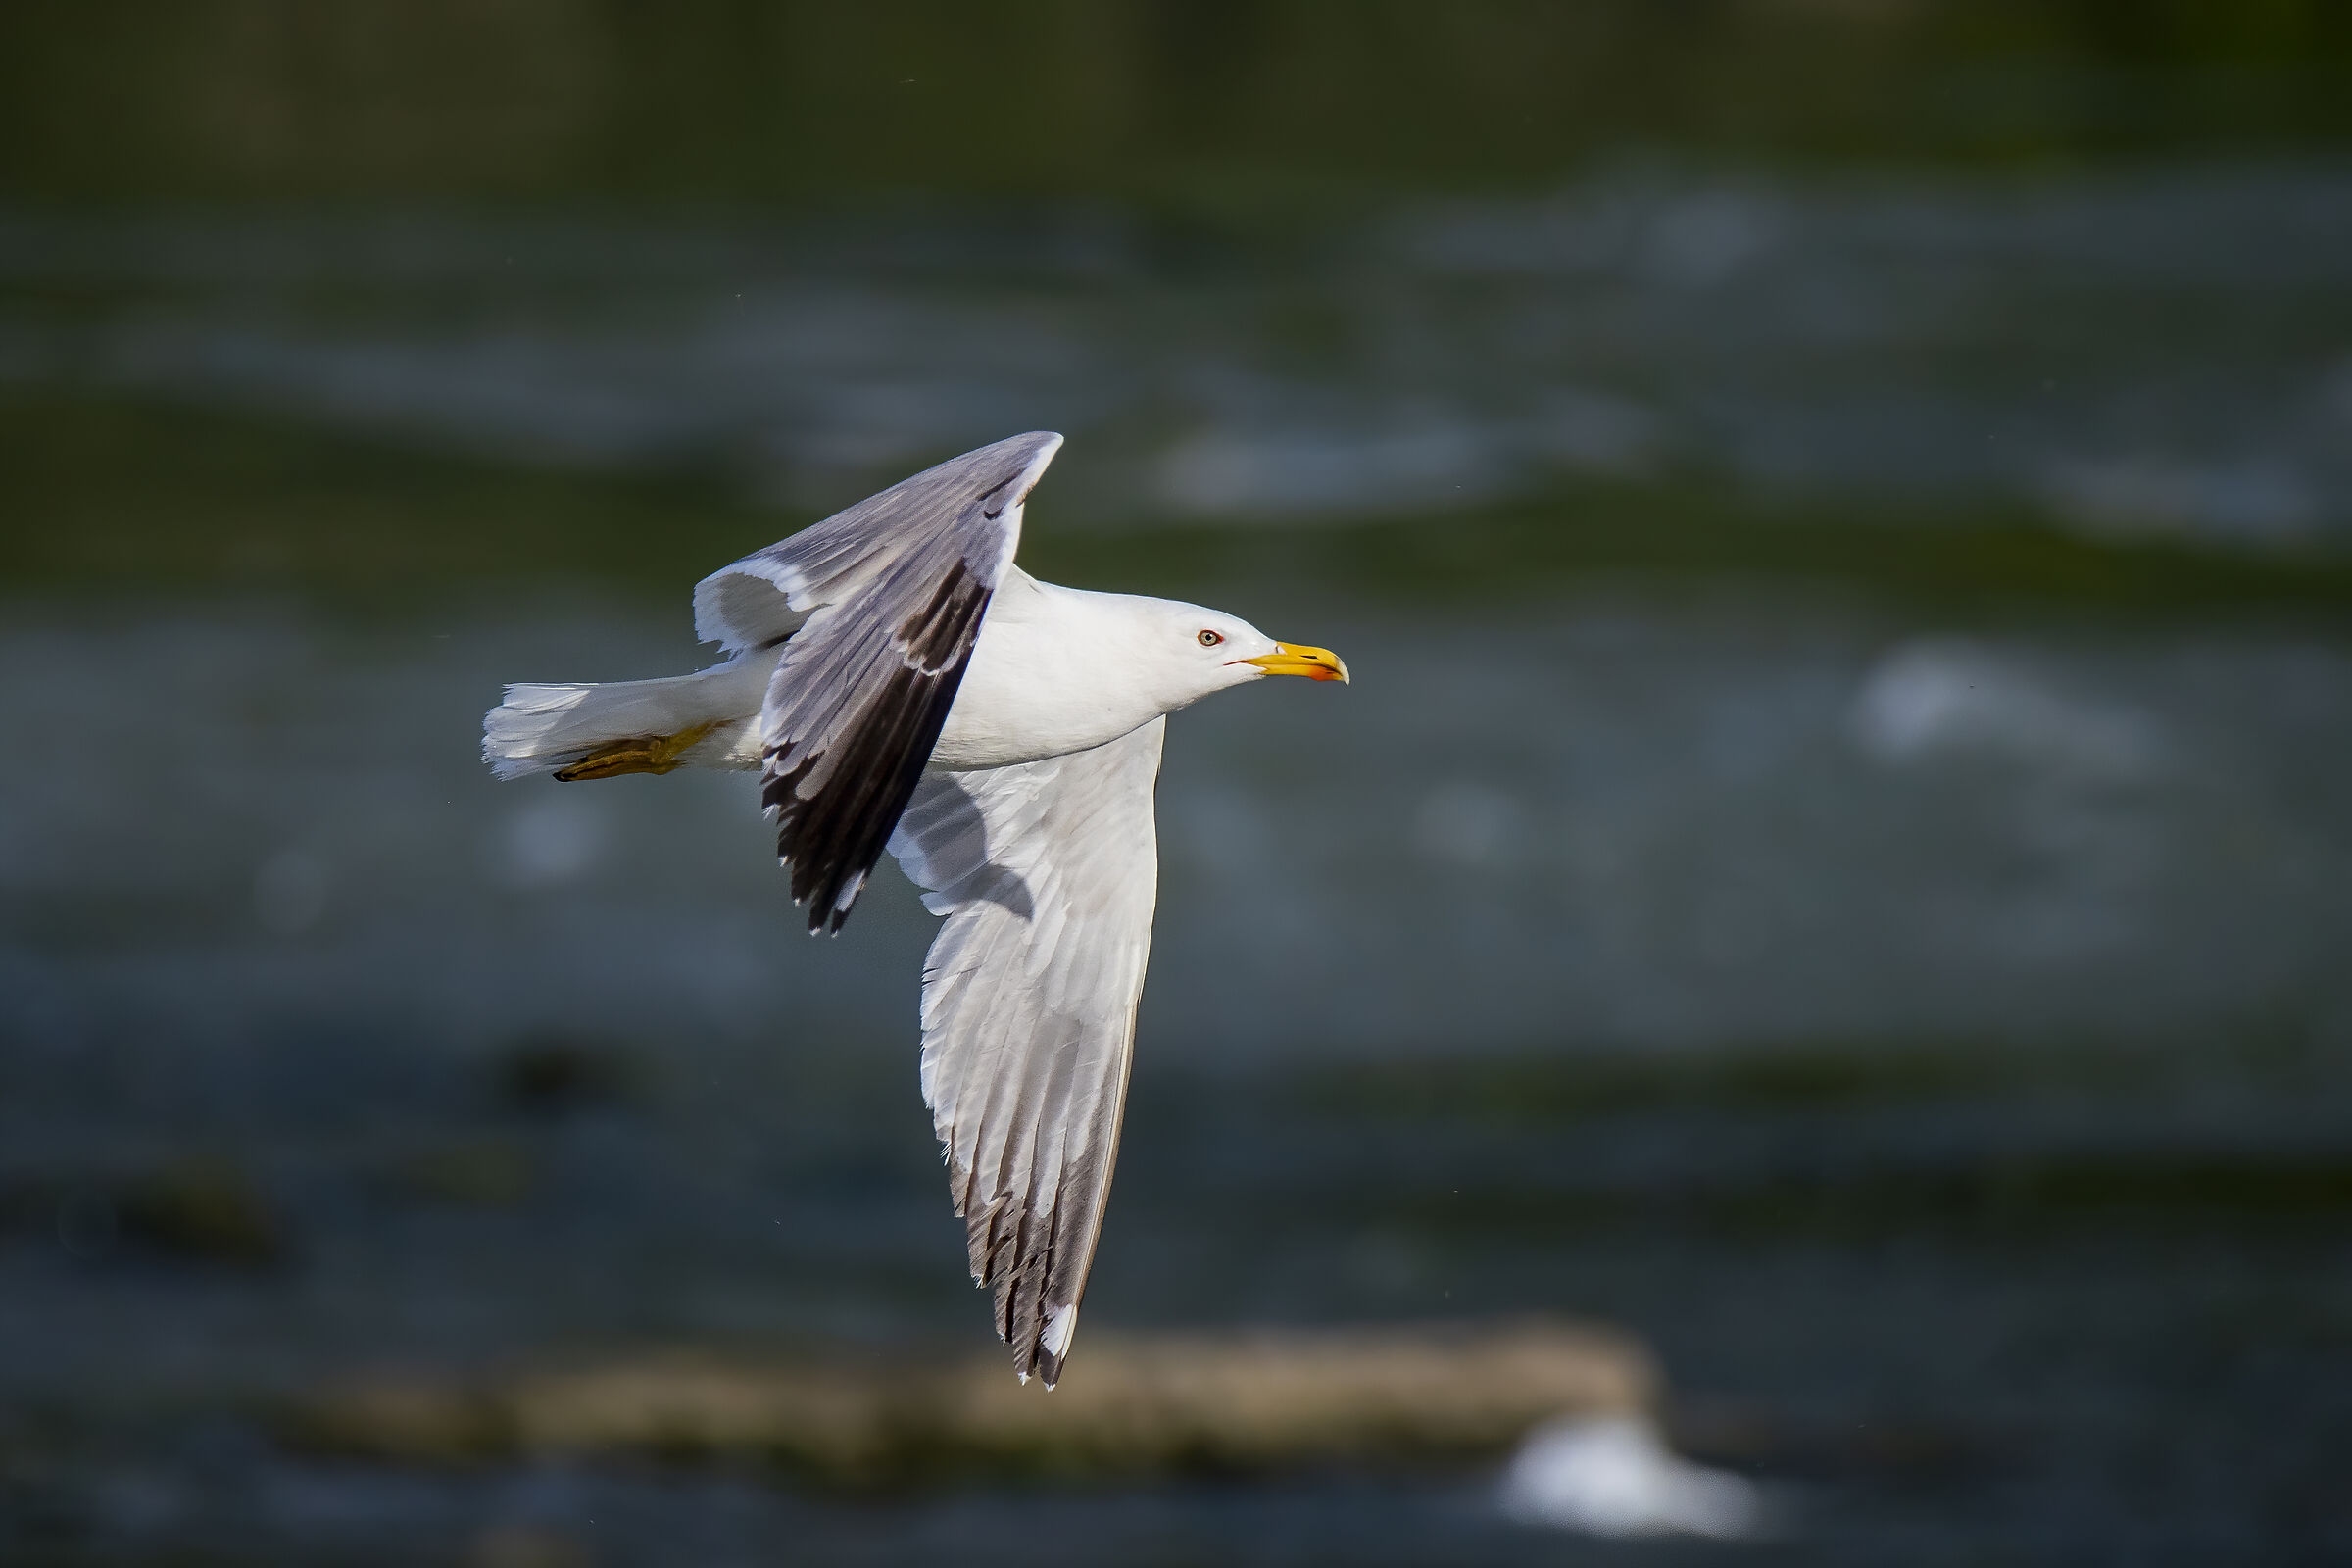 The Seagull's Flight...